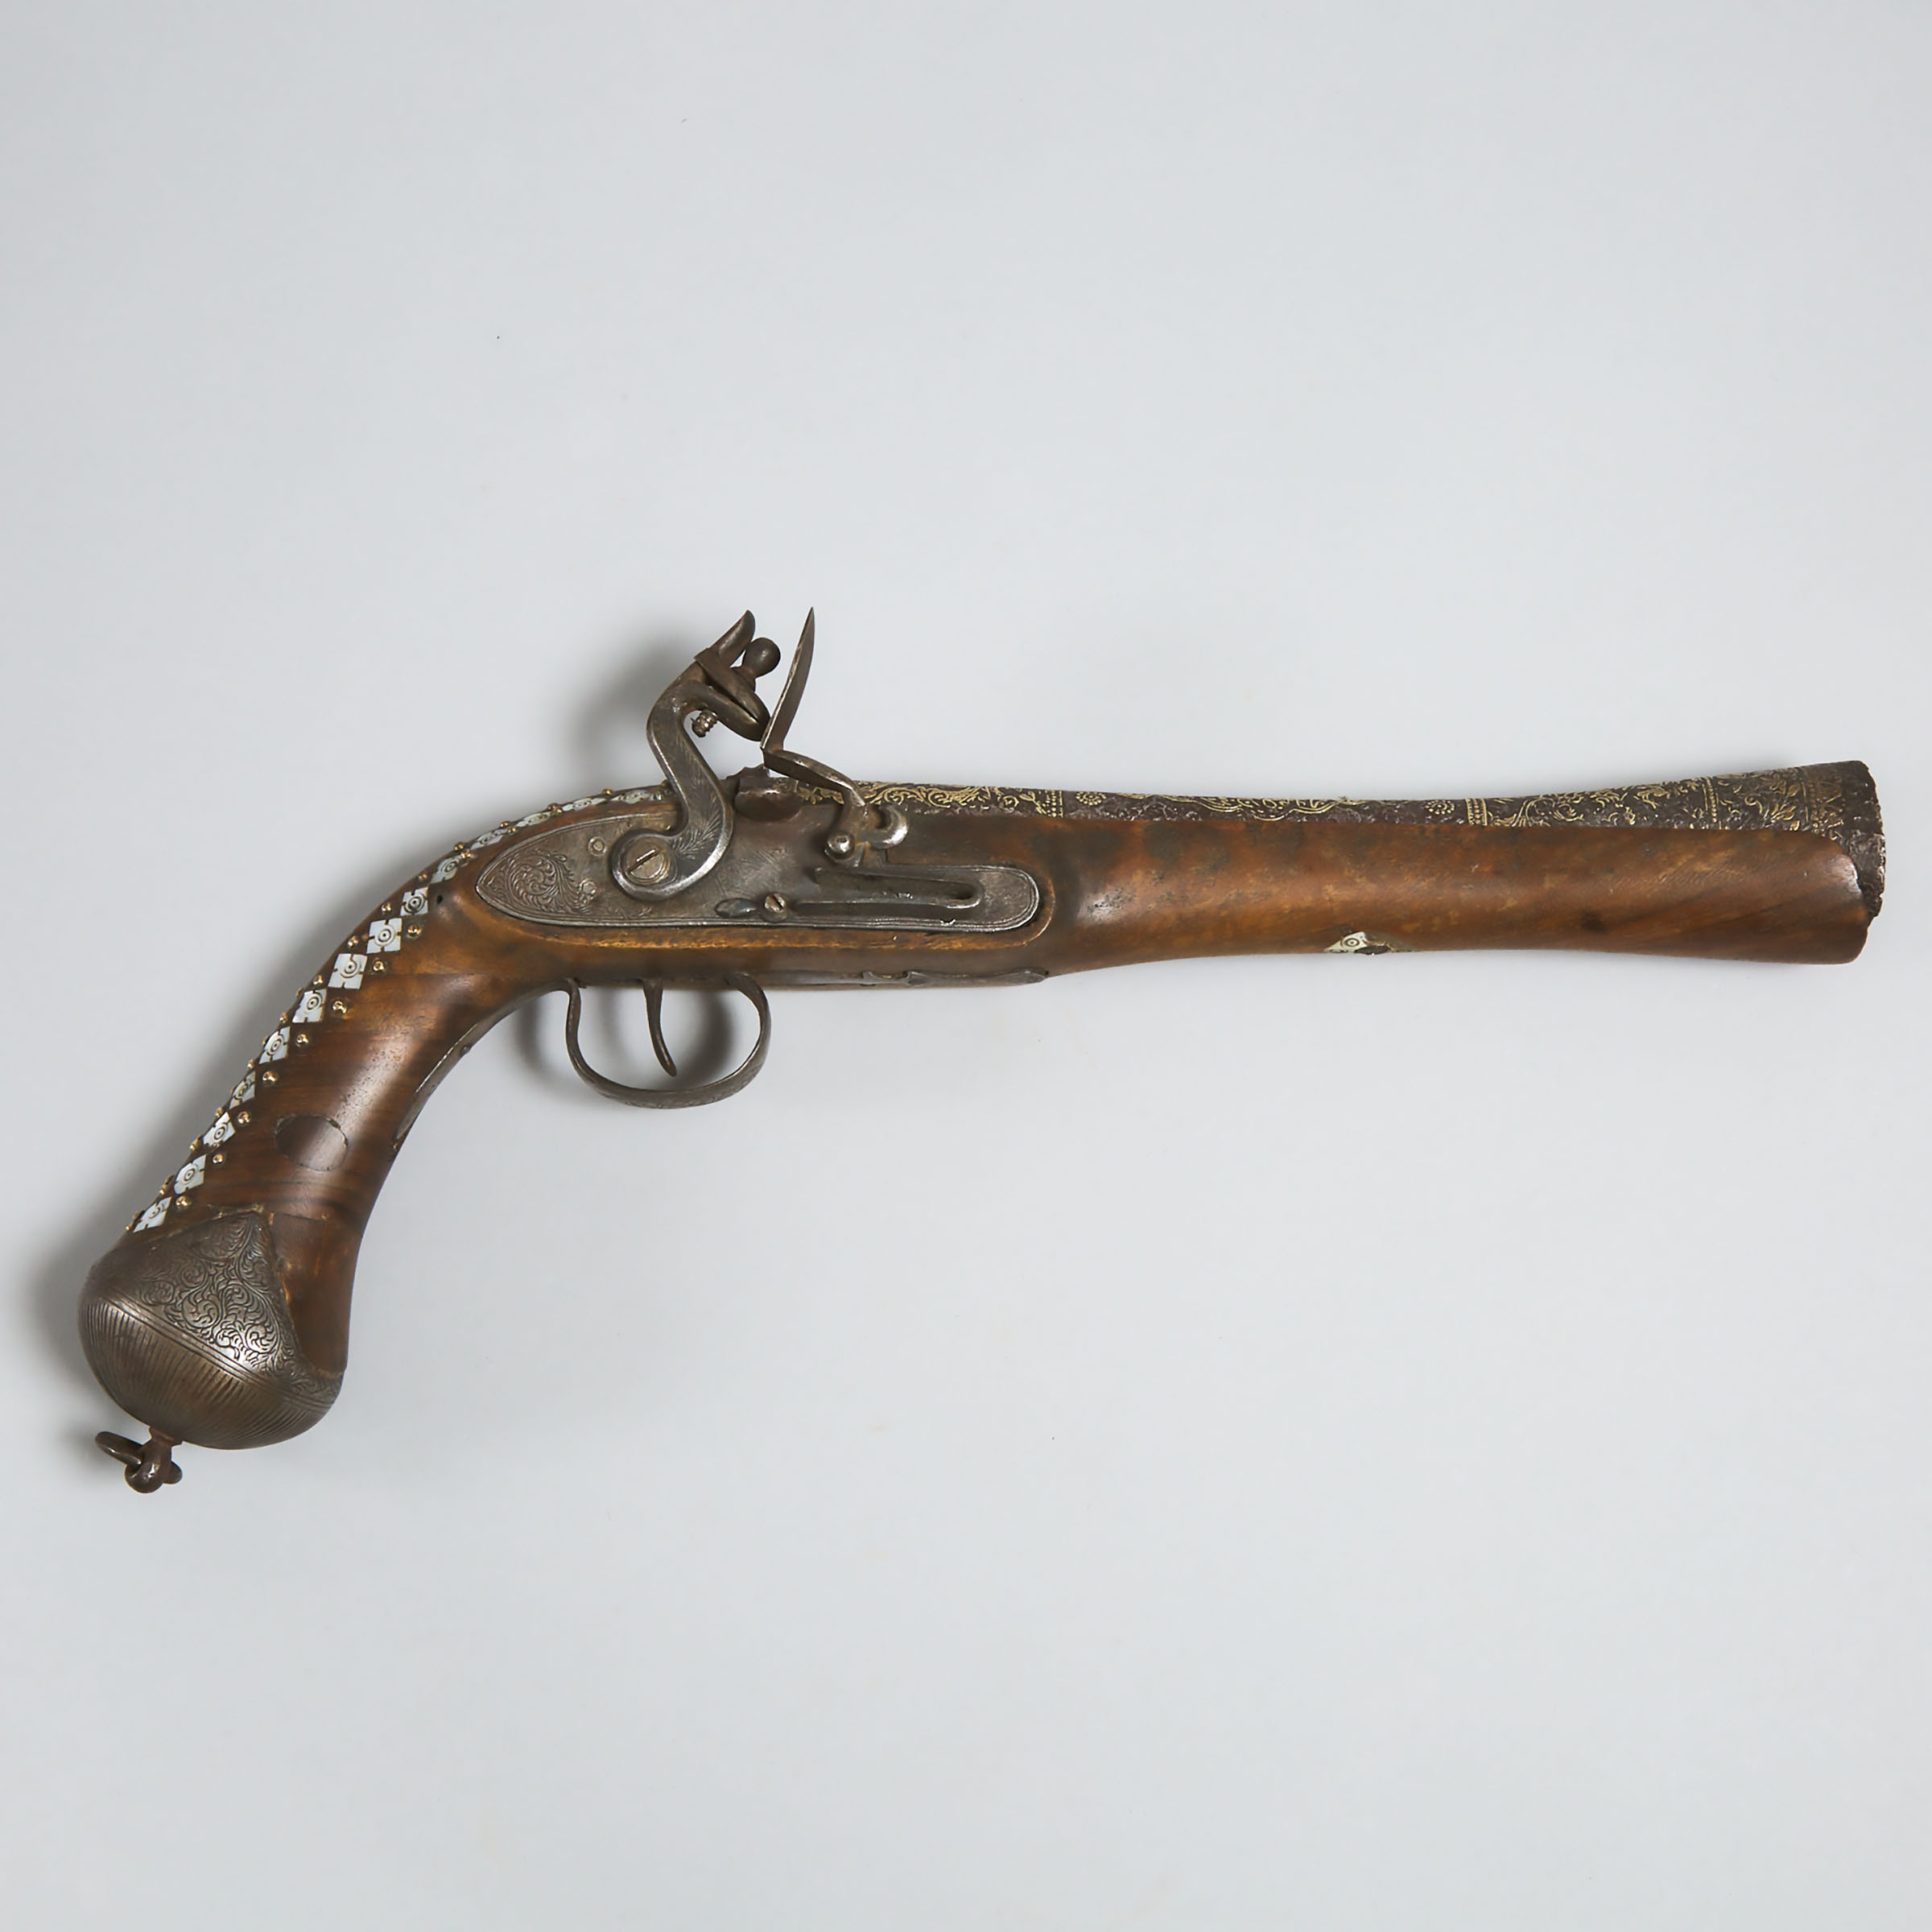 Turkish Flintlock Blunderbuss Pistol, 18th/early 19th century